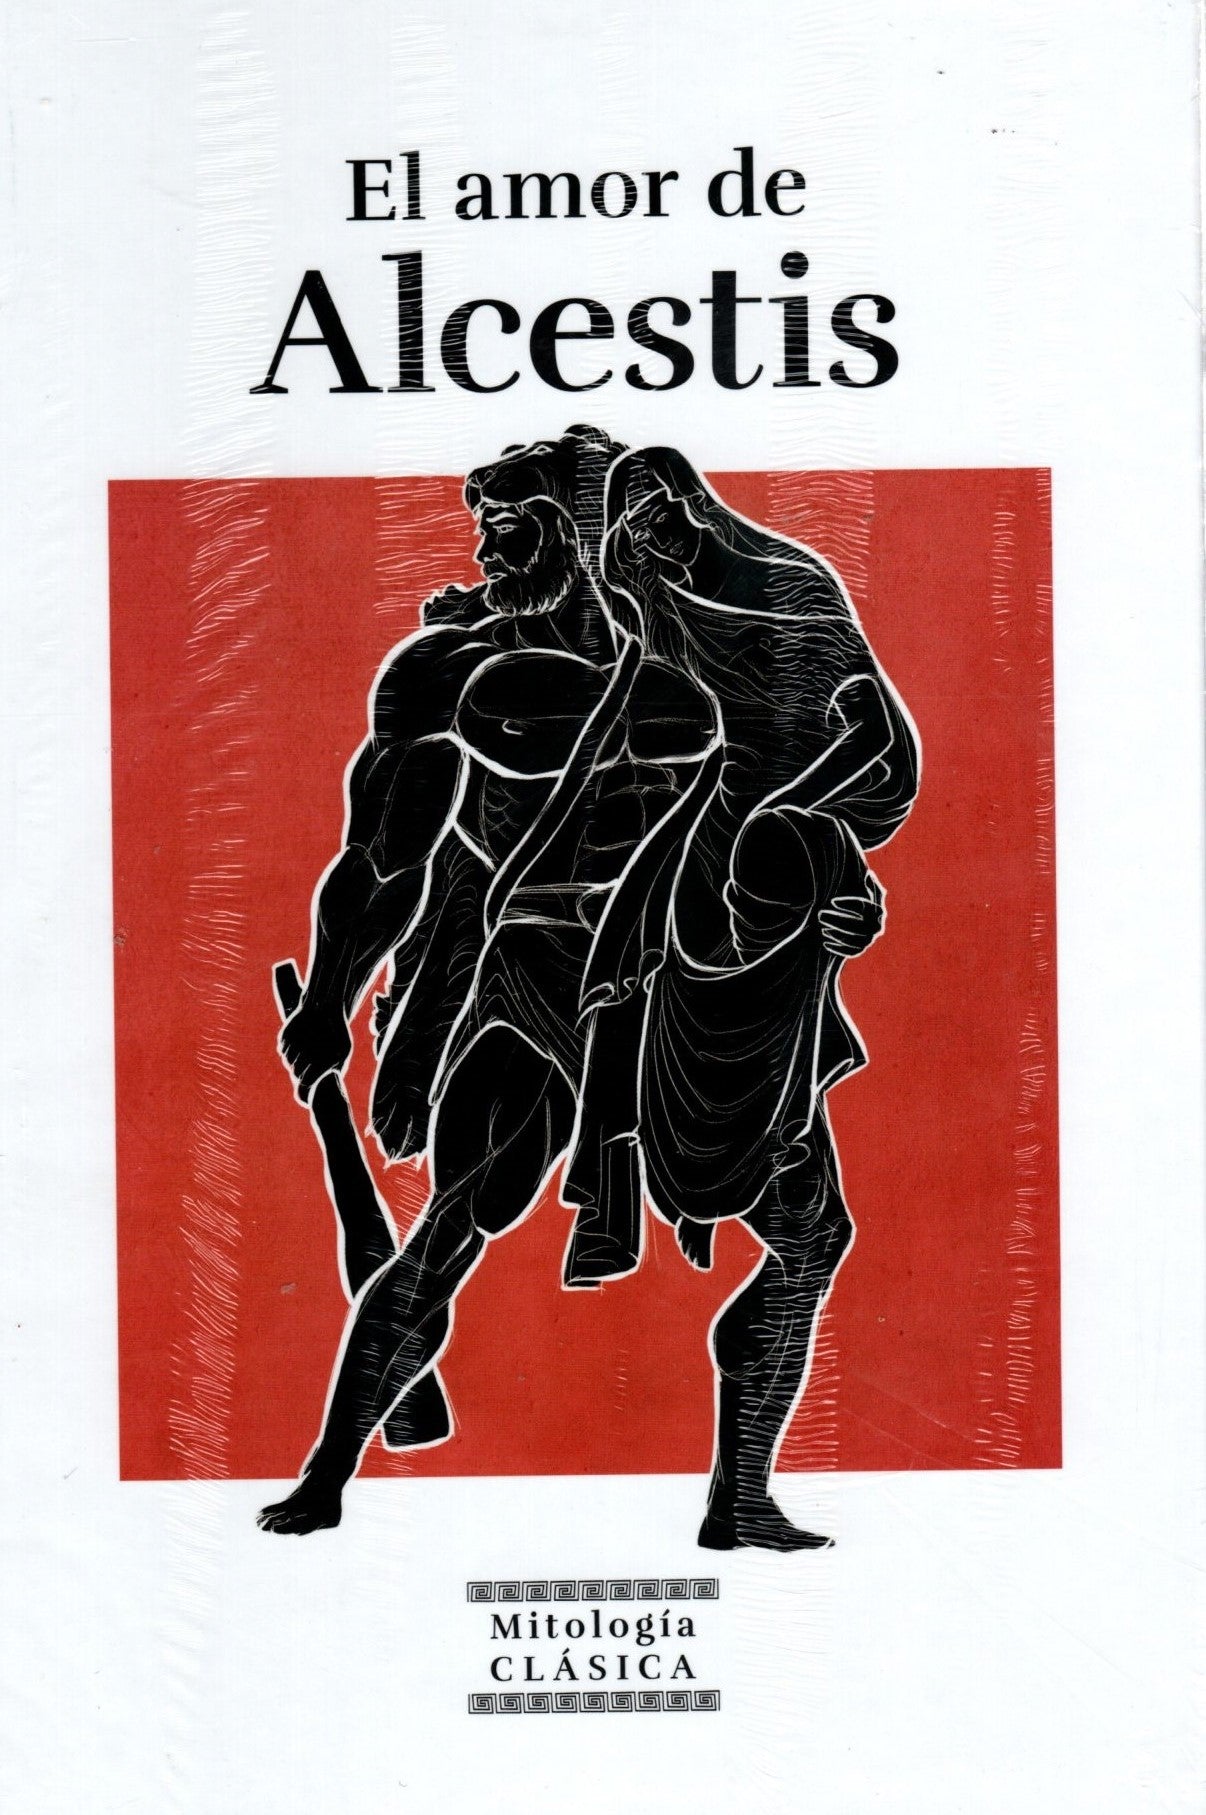 Libro Mitologia - El amor de alcestis